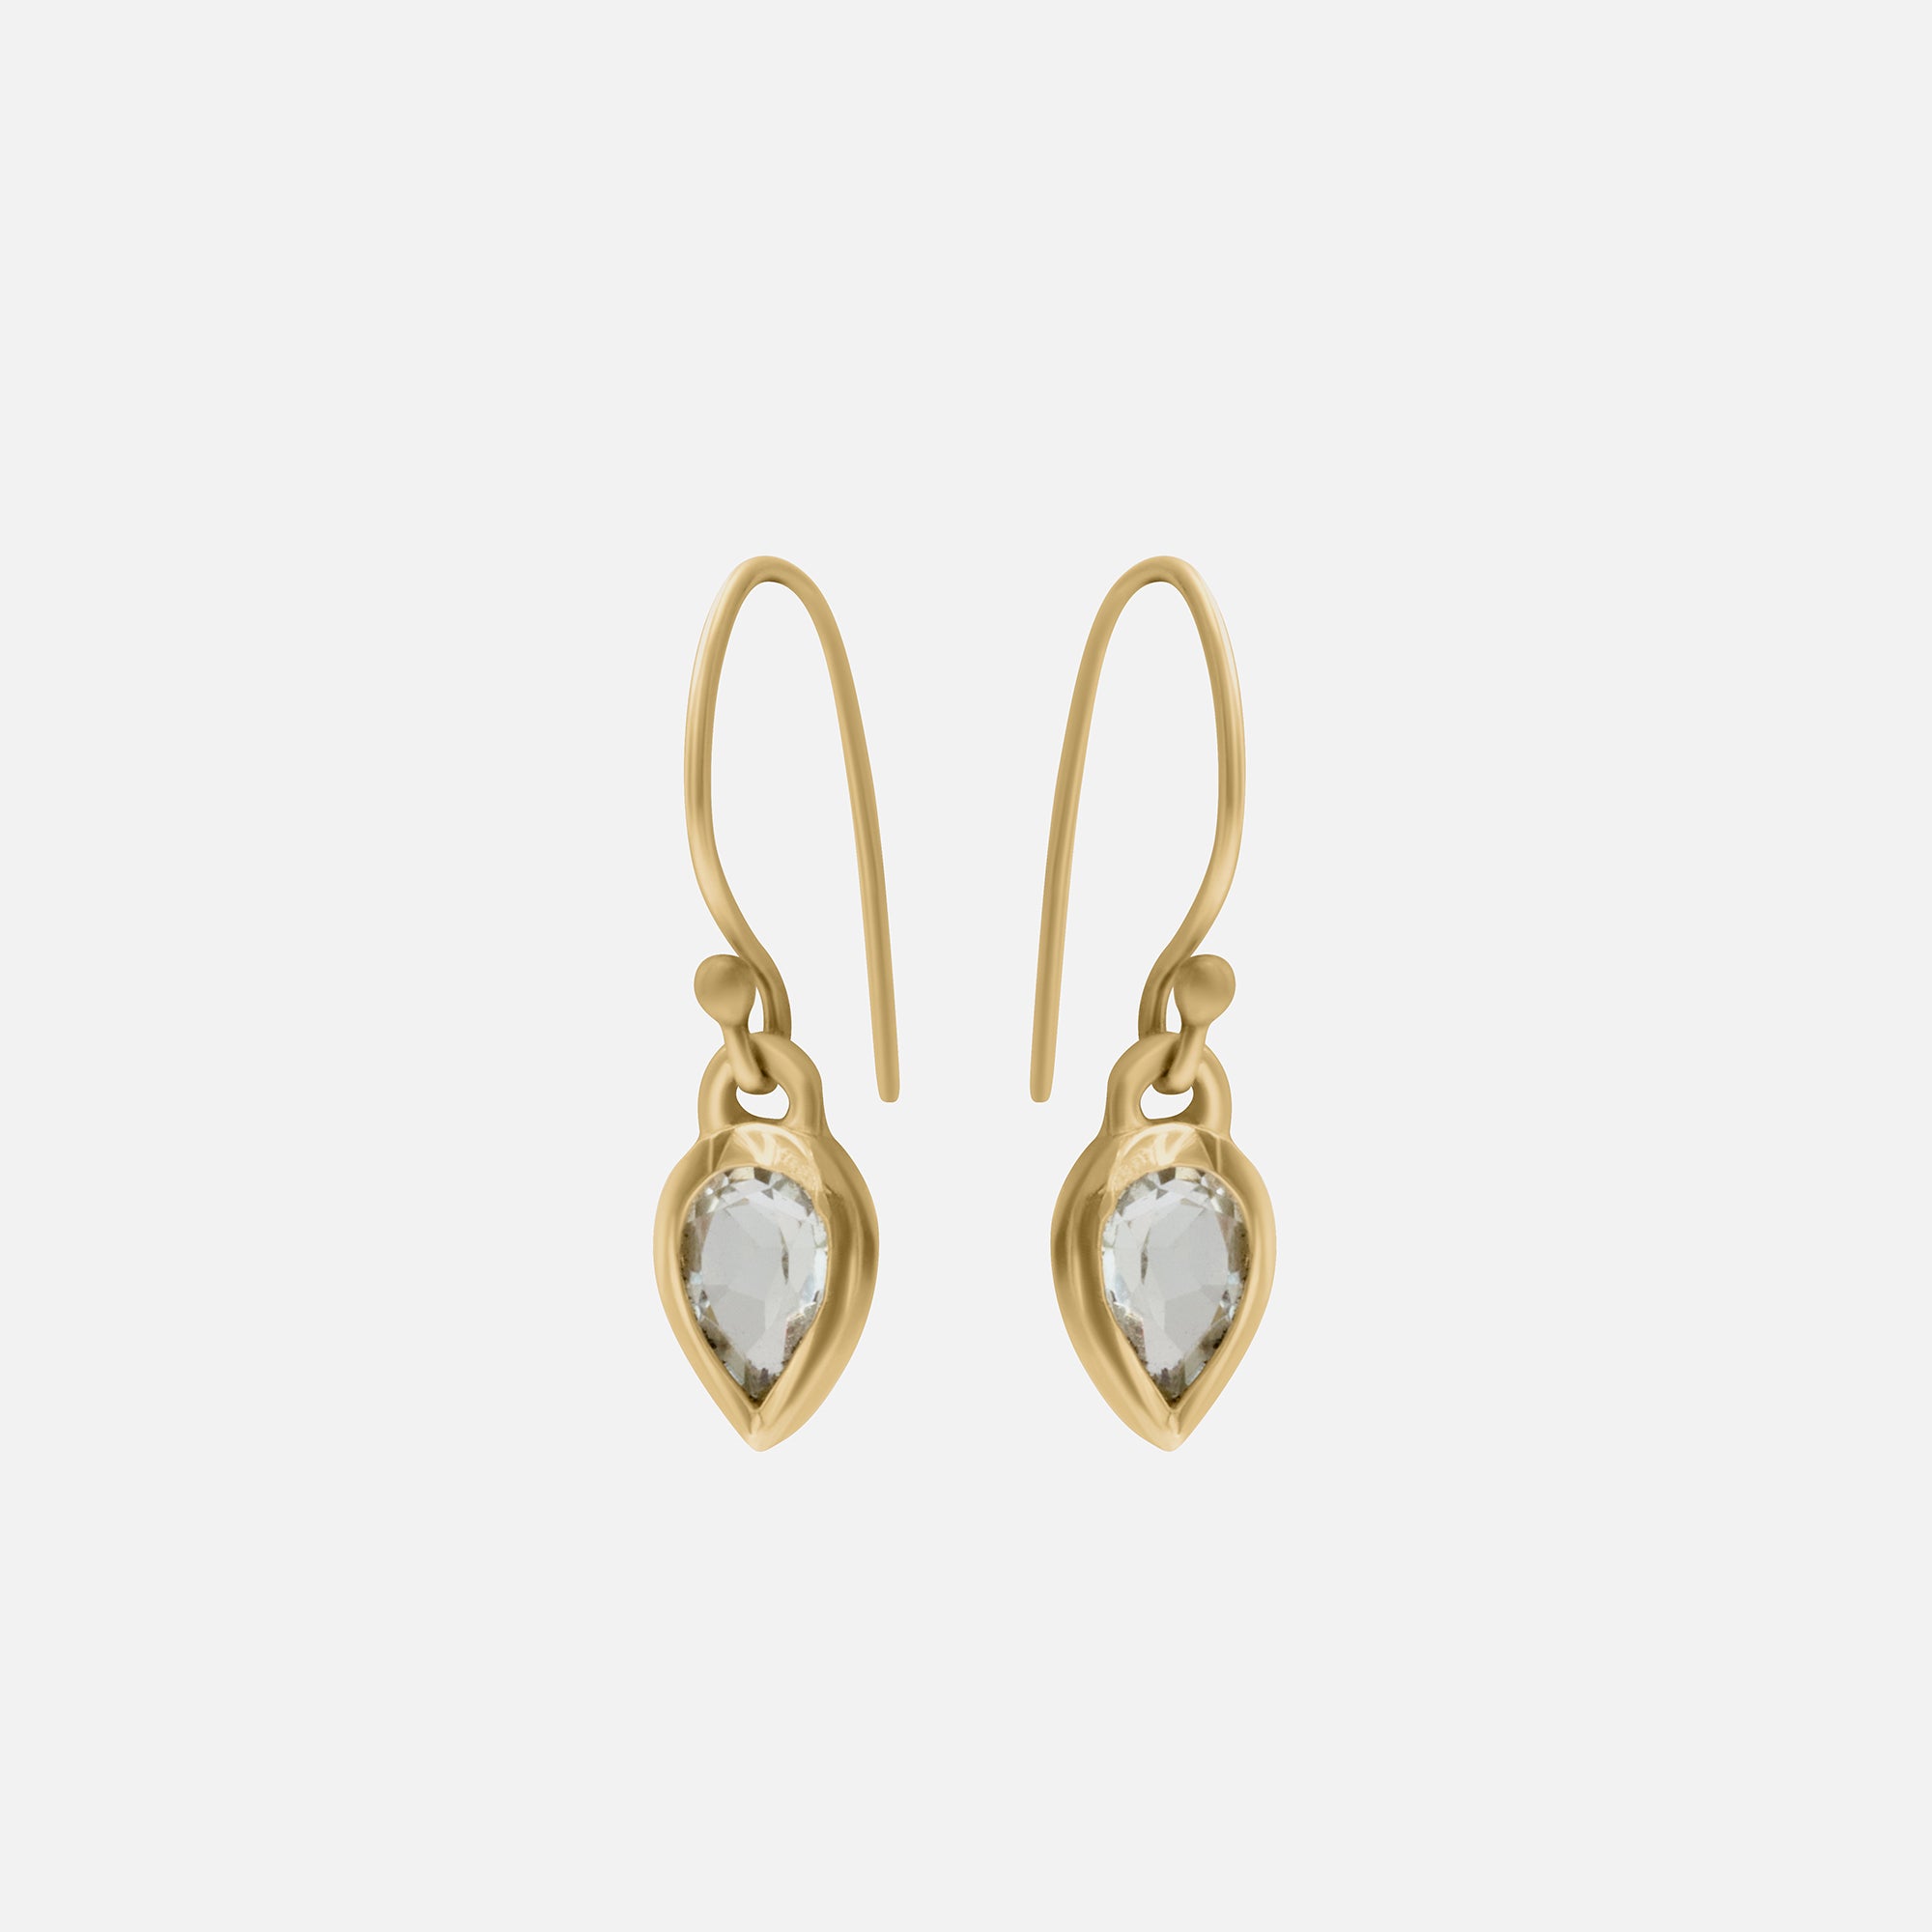 Green Amethyst / Earrings By Tricia Kirkland in earrings Category